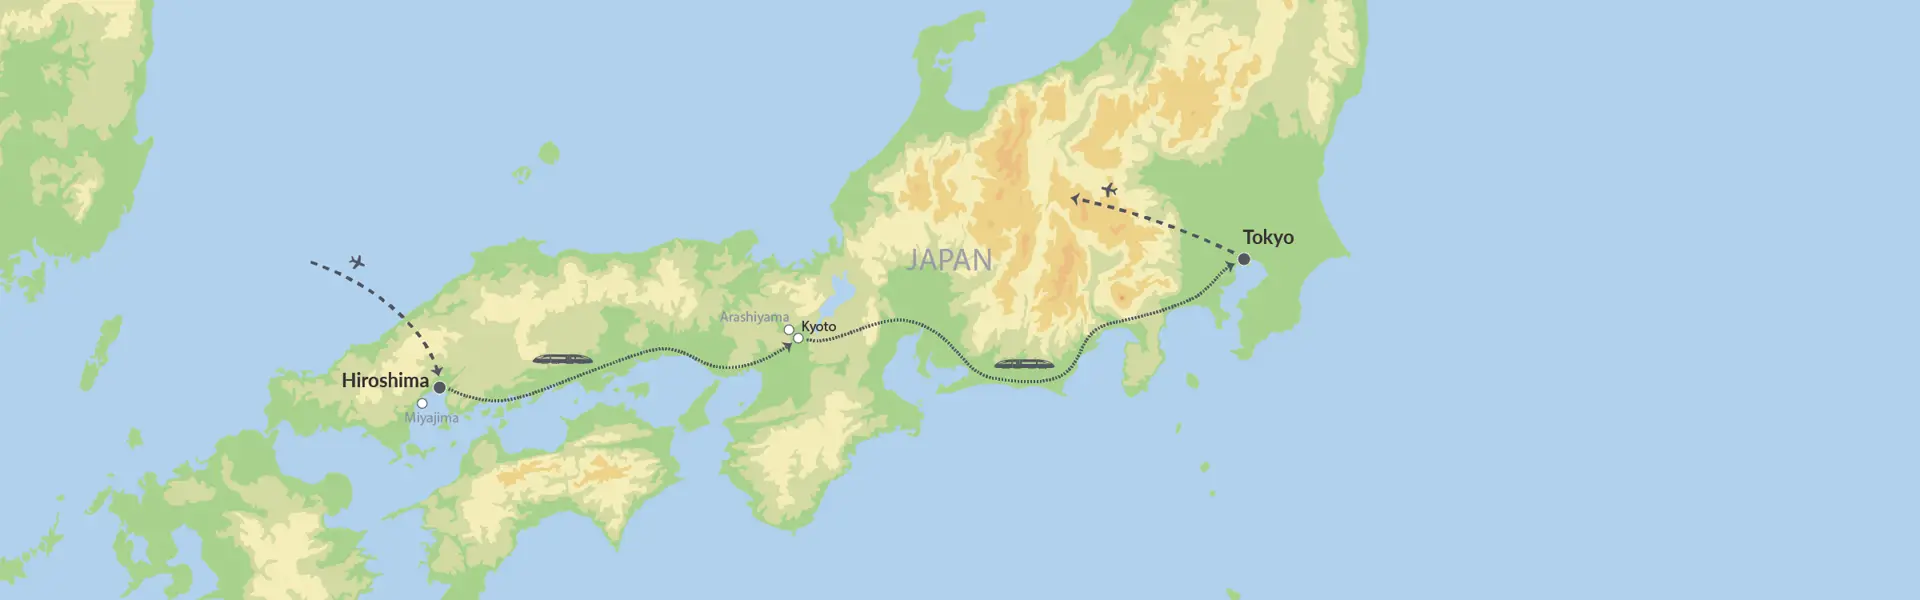 Togrejse Til Japans Højdepunkter Map